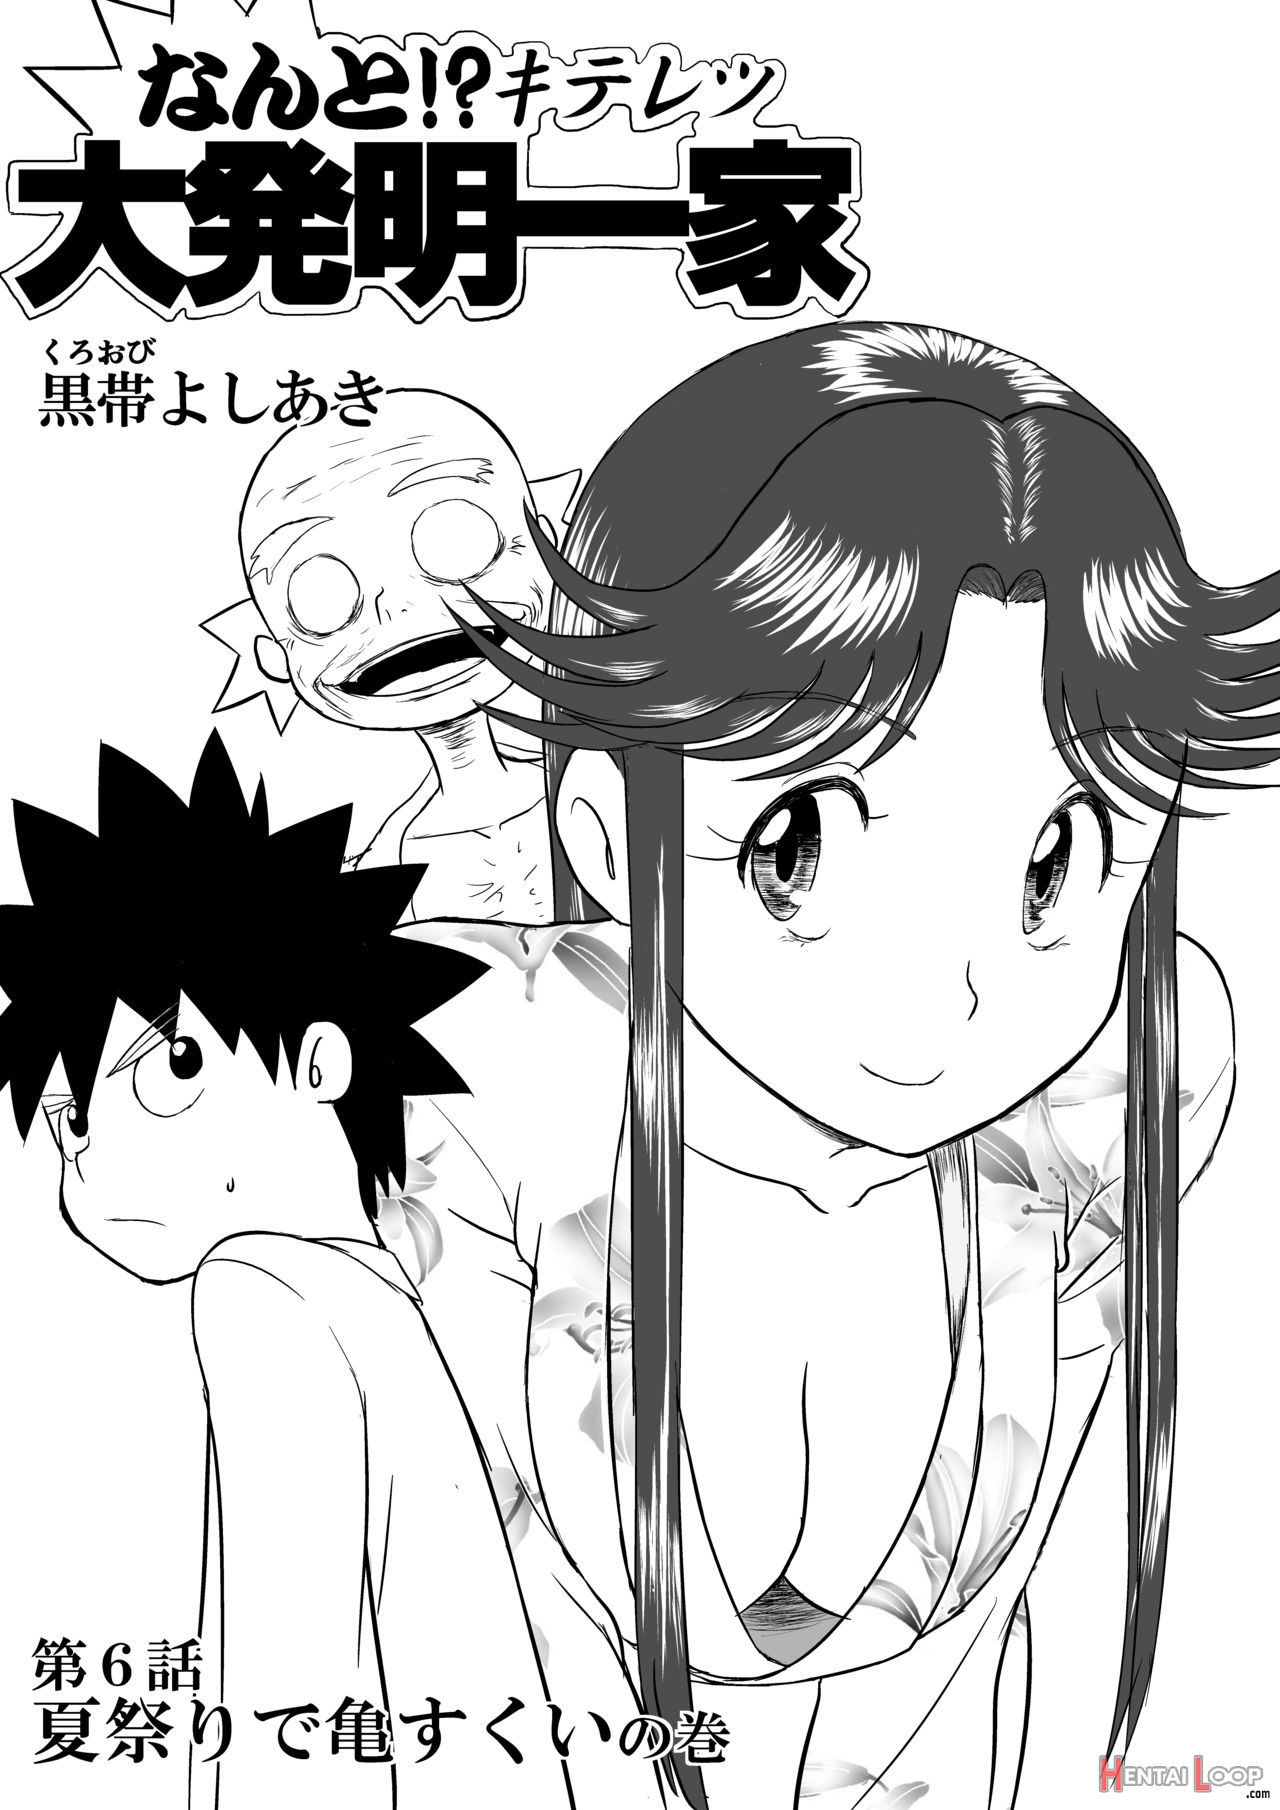 Mousou Meisaku Kuradashi Gekijou Nankite page 1